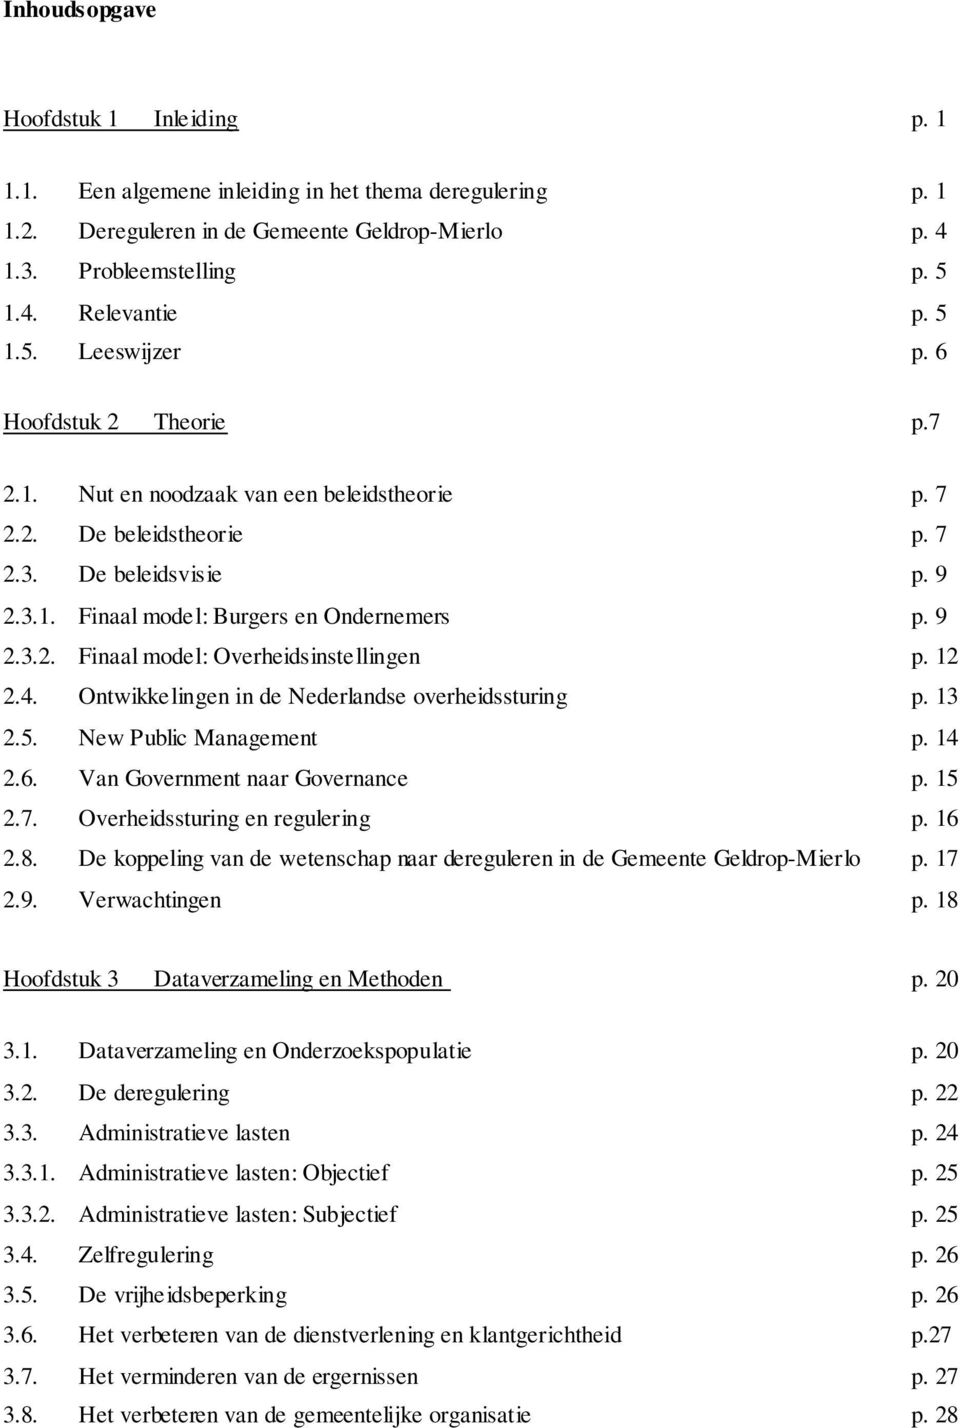 9 2.3.2. Finaal model: Overheidsinstellingen p. 12 2.4. Ontwikkelingen in de Nederlandse overheidssturing p. 13 2.5. New Public Management p. 14 2.6. Van Government naar Governance p. 15 2.7.